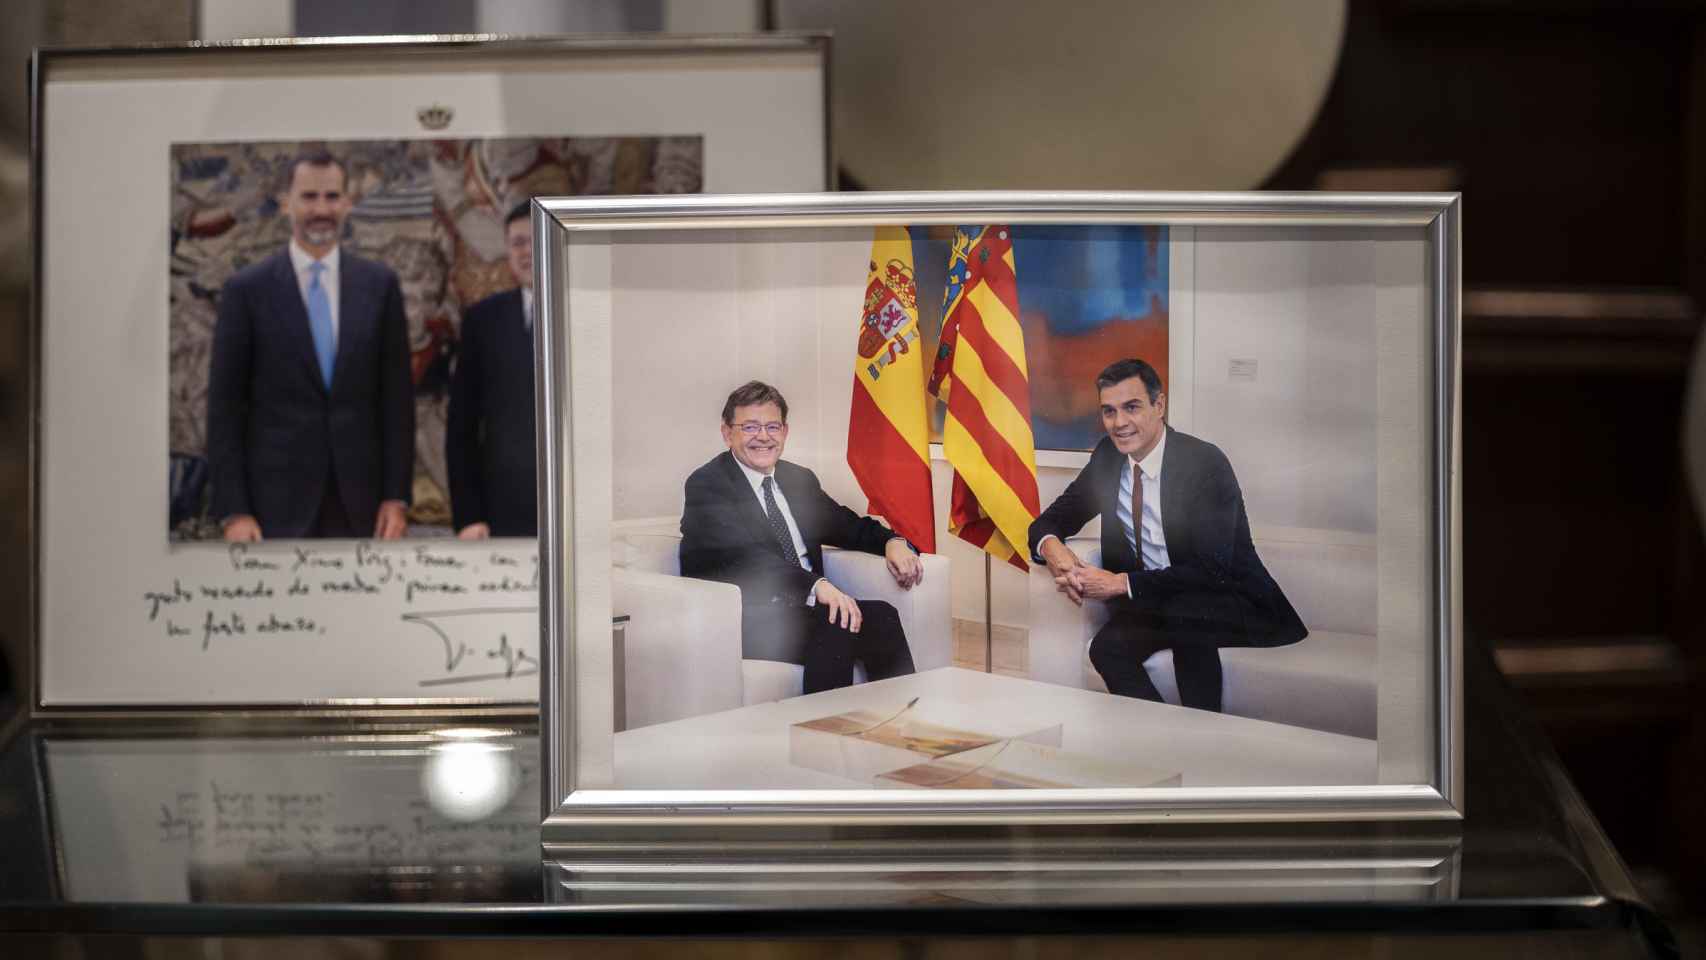 Fotografías con Felipe VI y Pedro Sánchez en el despacho de Ximo Puig.